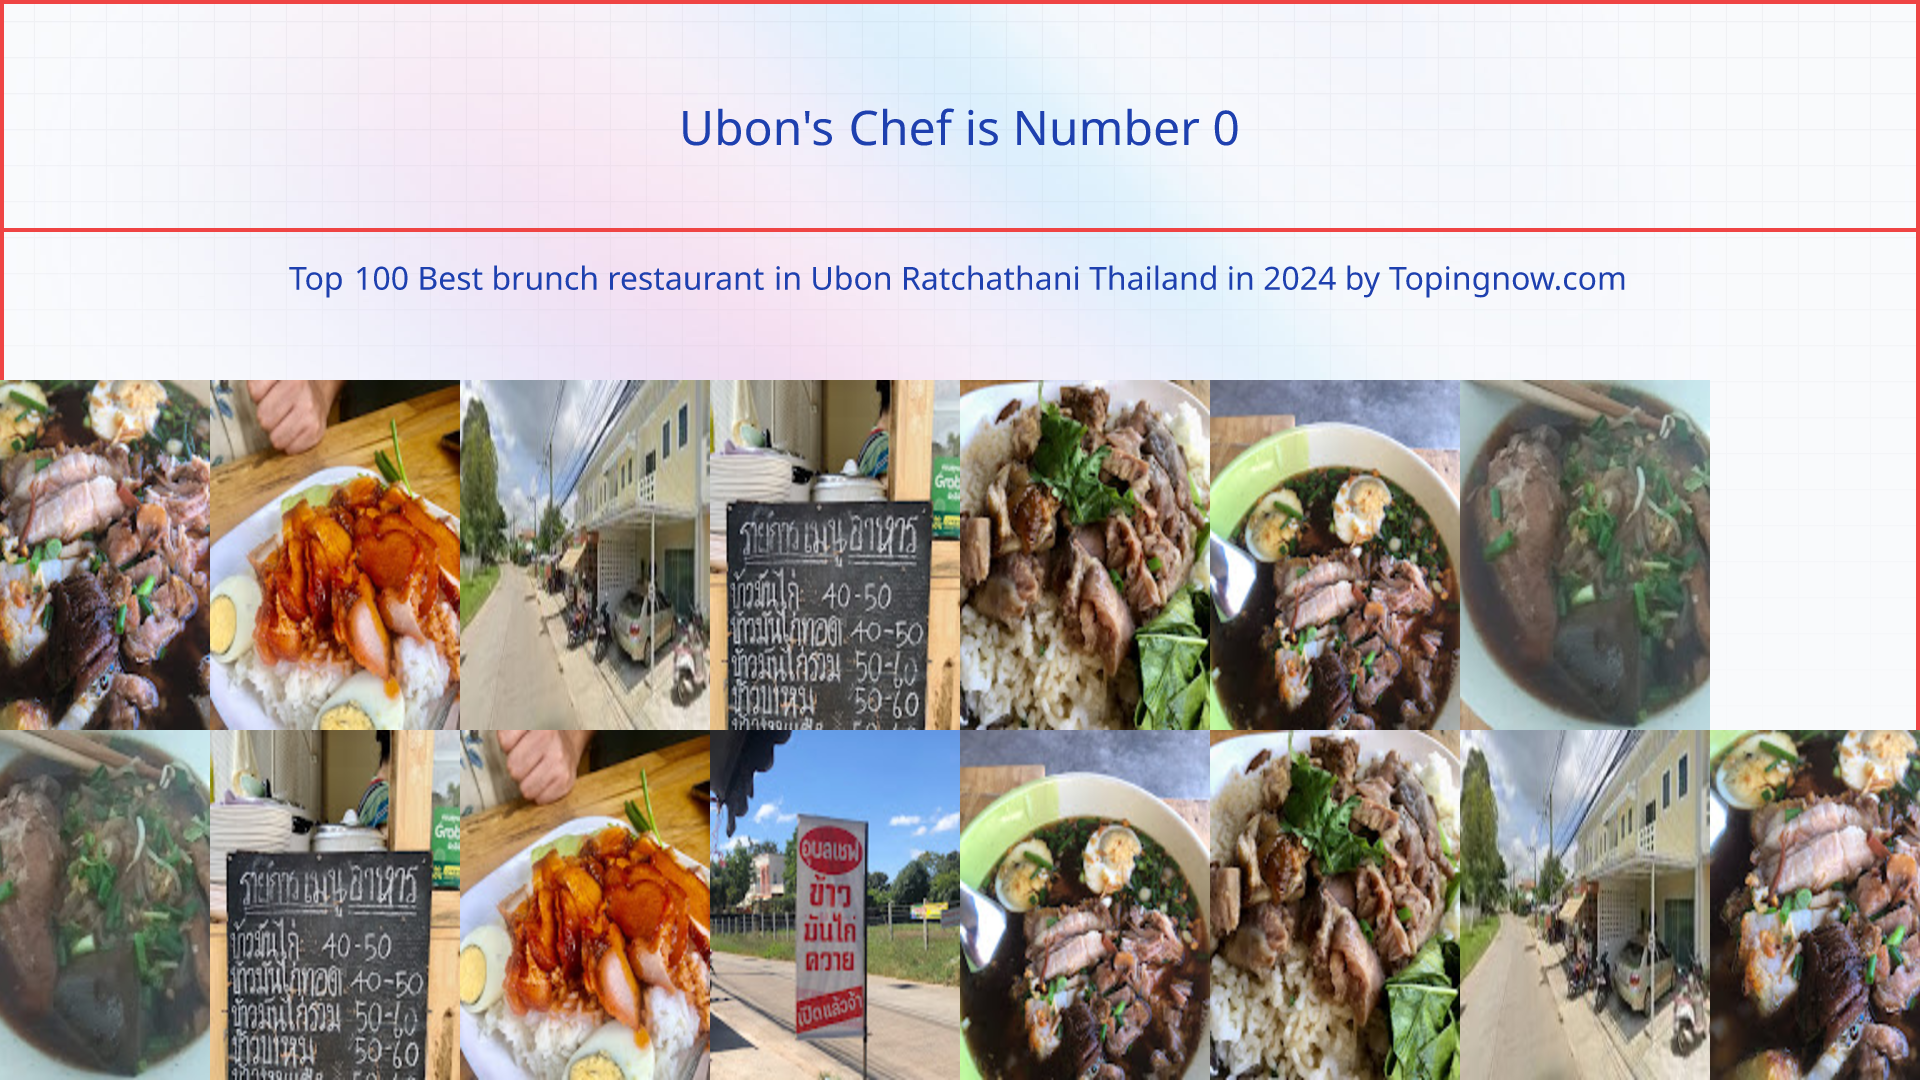 Ubon's Chef: Top 100 Best brunch restaurant in Ubon Ratchathani Thailand in 2024